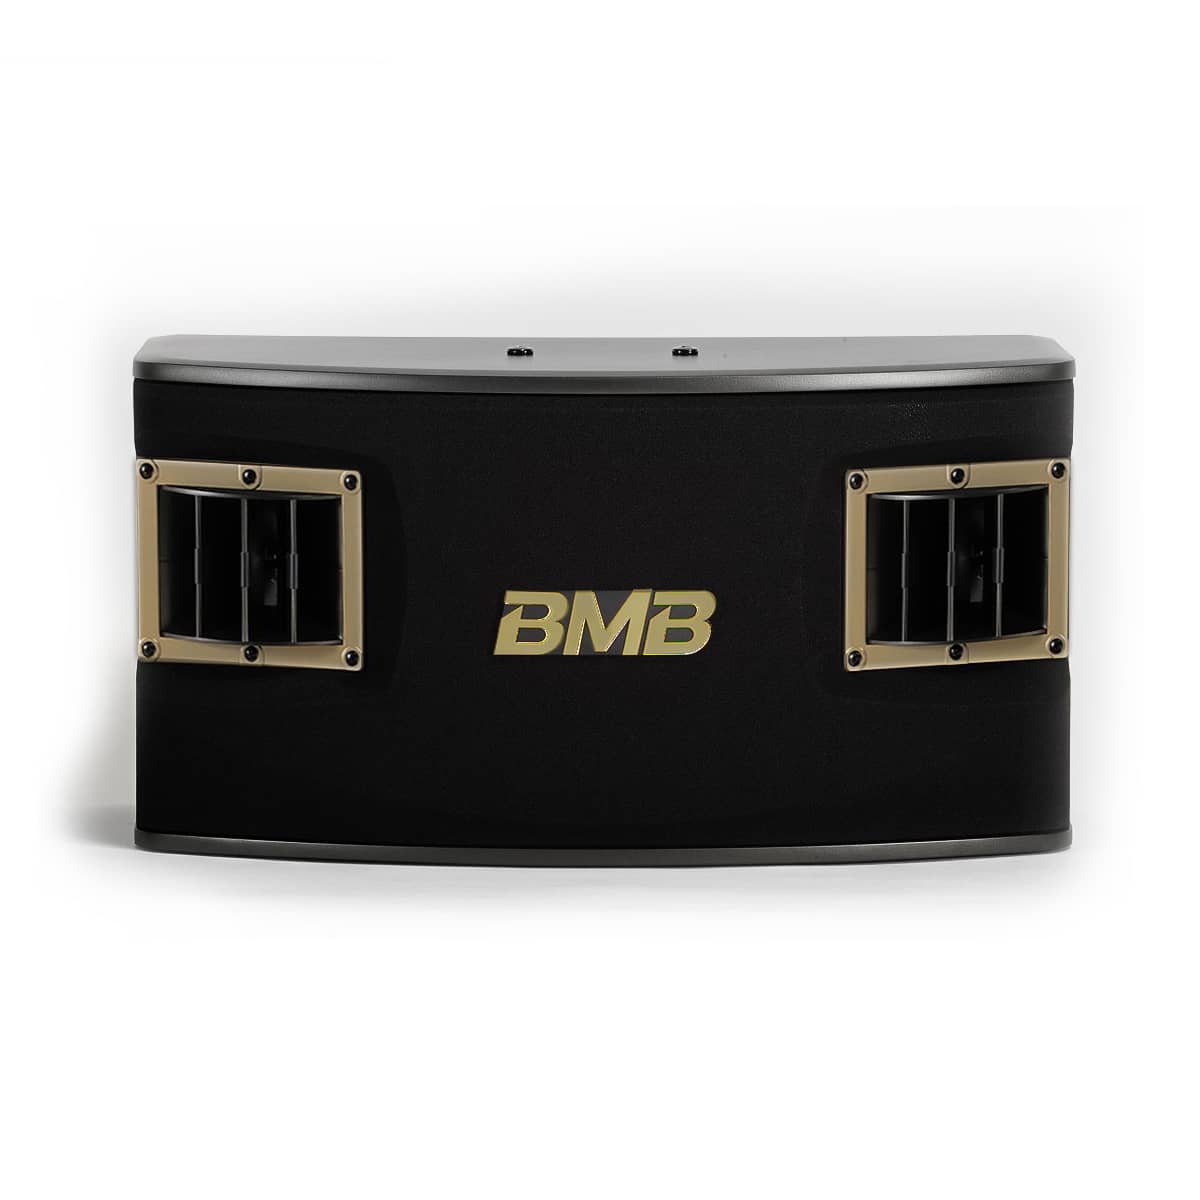 BMB CSV-450 500W 10" 3-Way Speakers